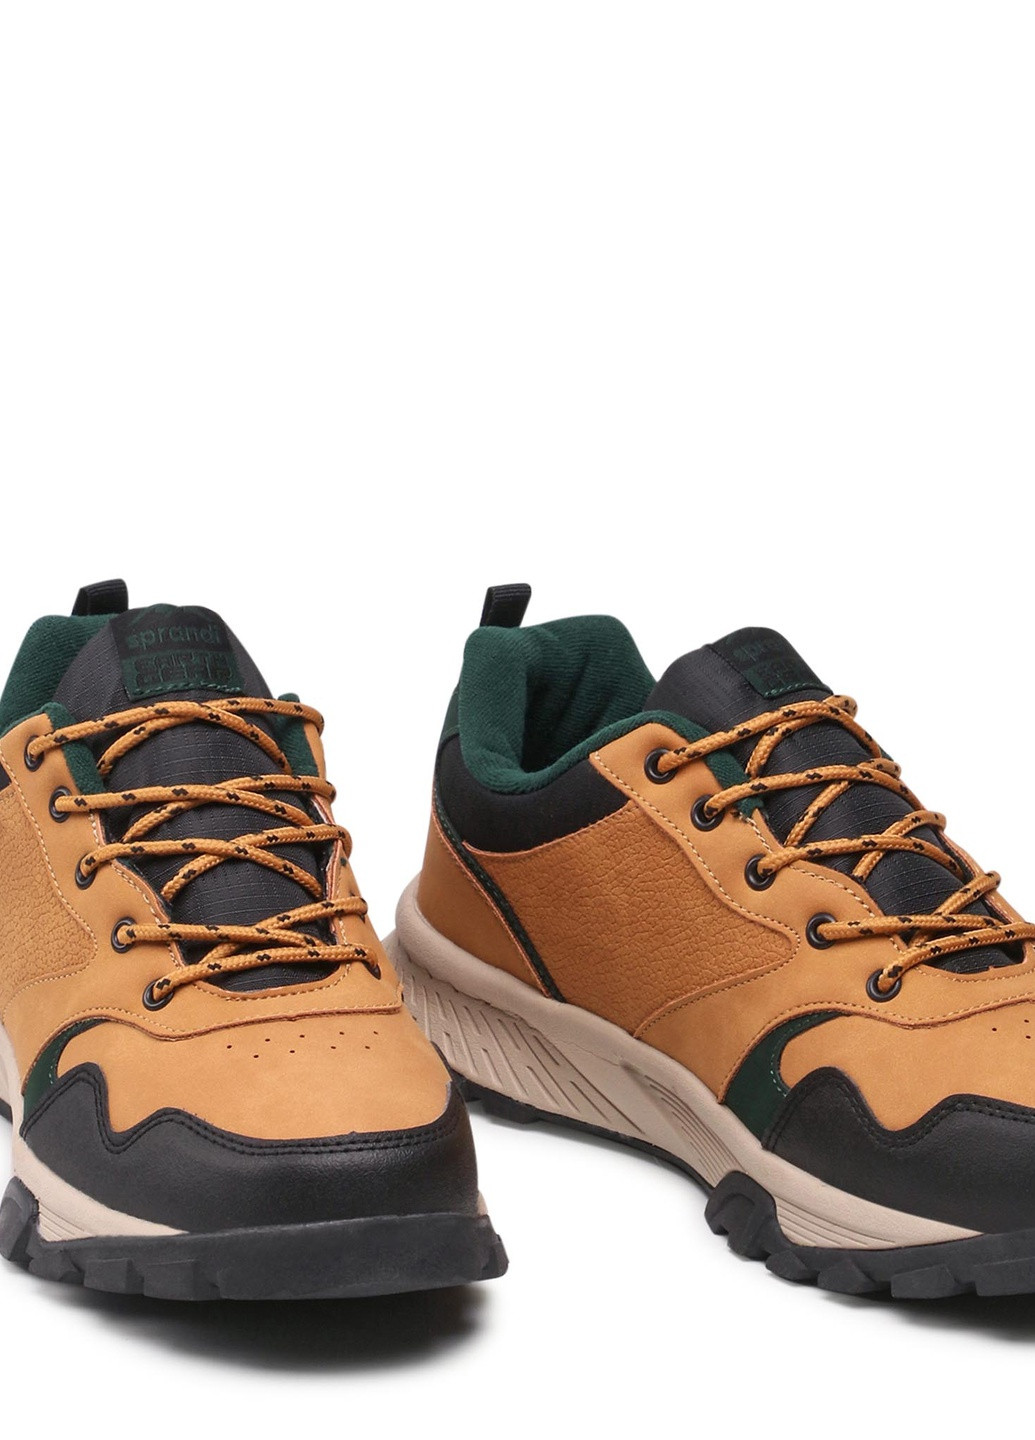 Світло-коричневі Осінні трекінгові черевики mp40-20375y SPRANDI EARTH GEAR